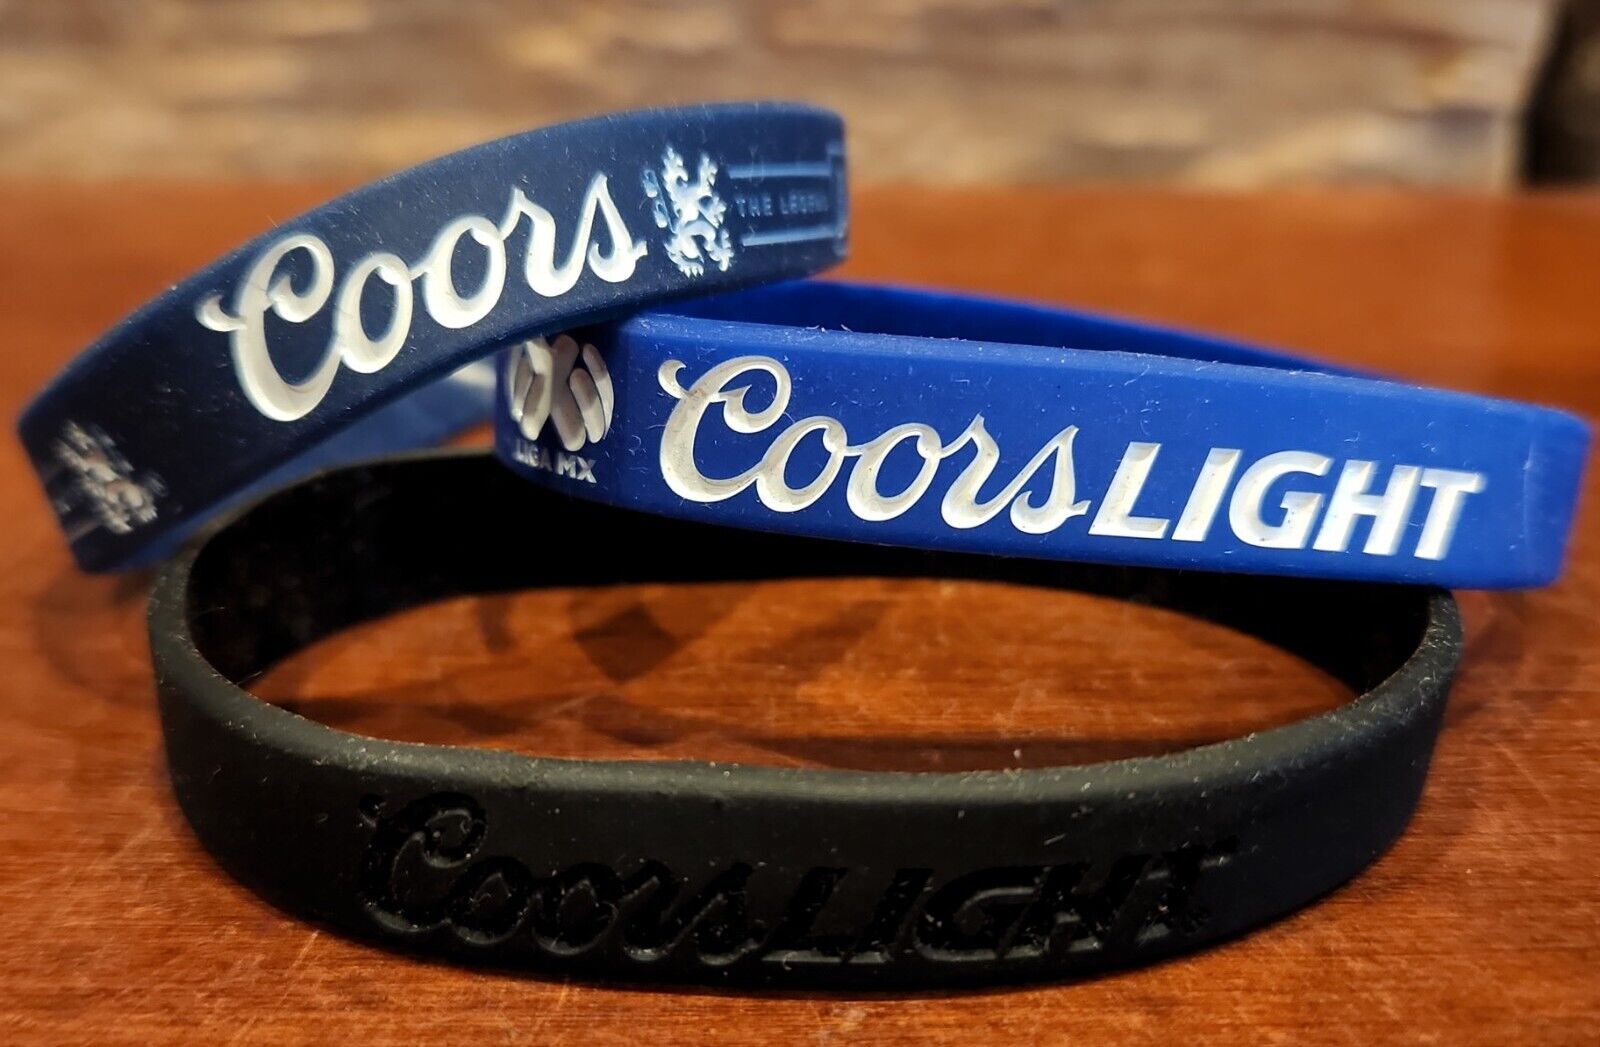 NEW Set of 3 Coors Light Beer Wristband Bracelets Beer Bottle Band Blue & Black